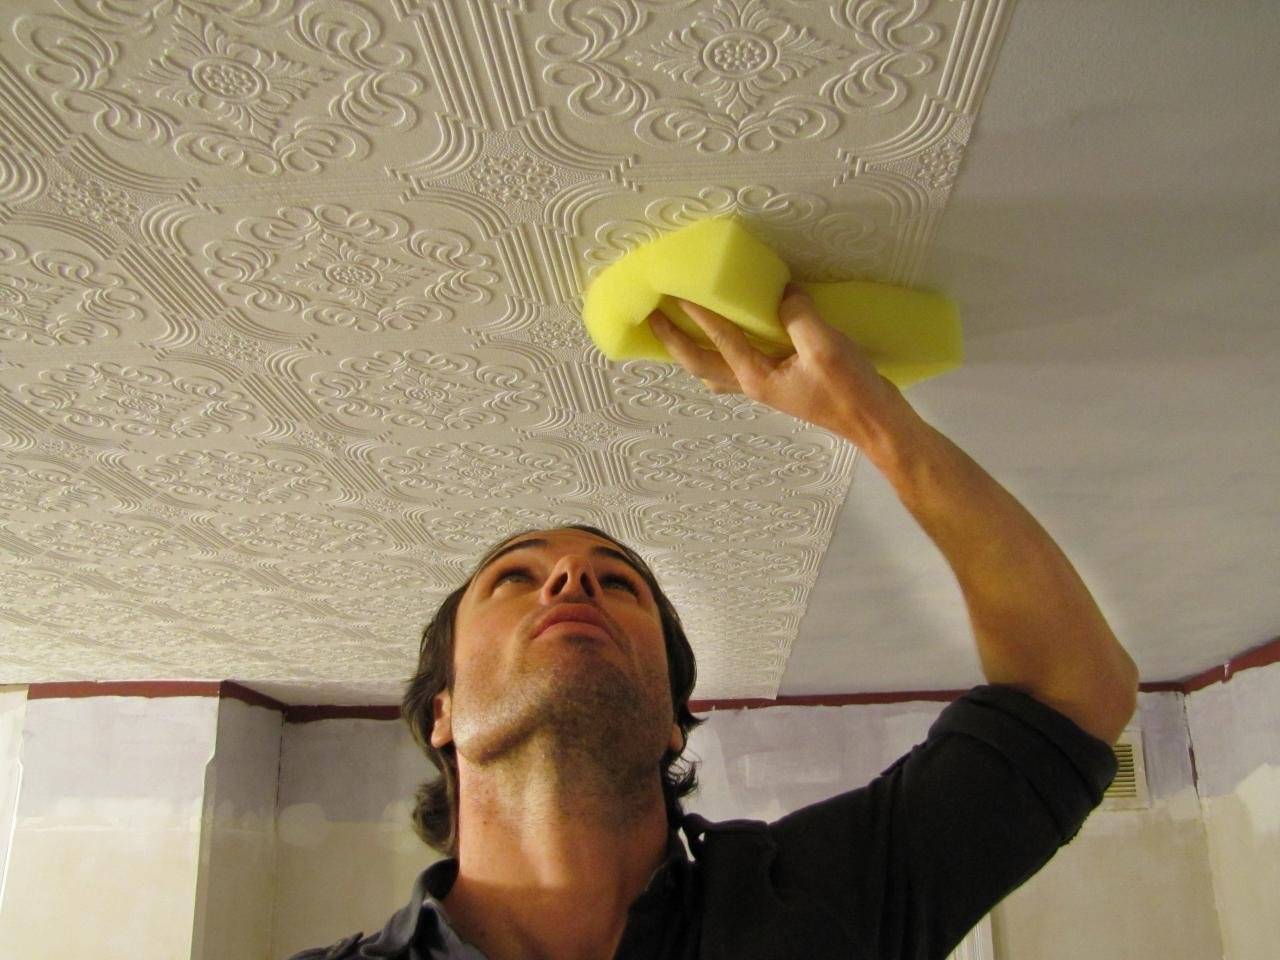 Бесшовная потолочная плитка: инструкция, как сделать своими руками, фото и видео